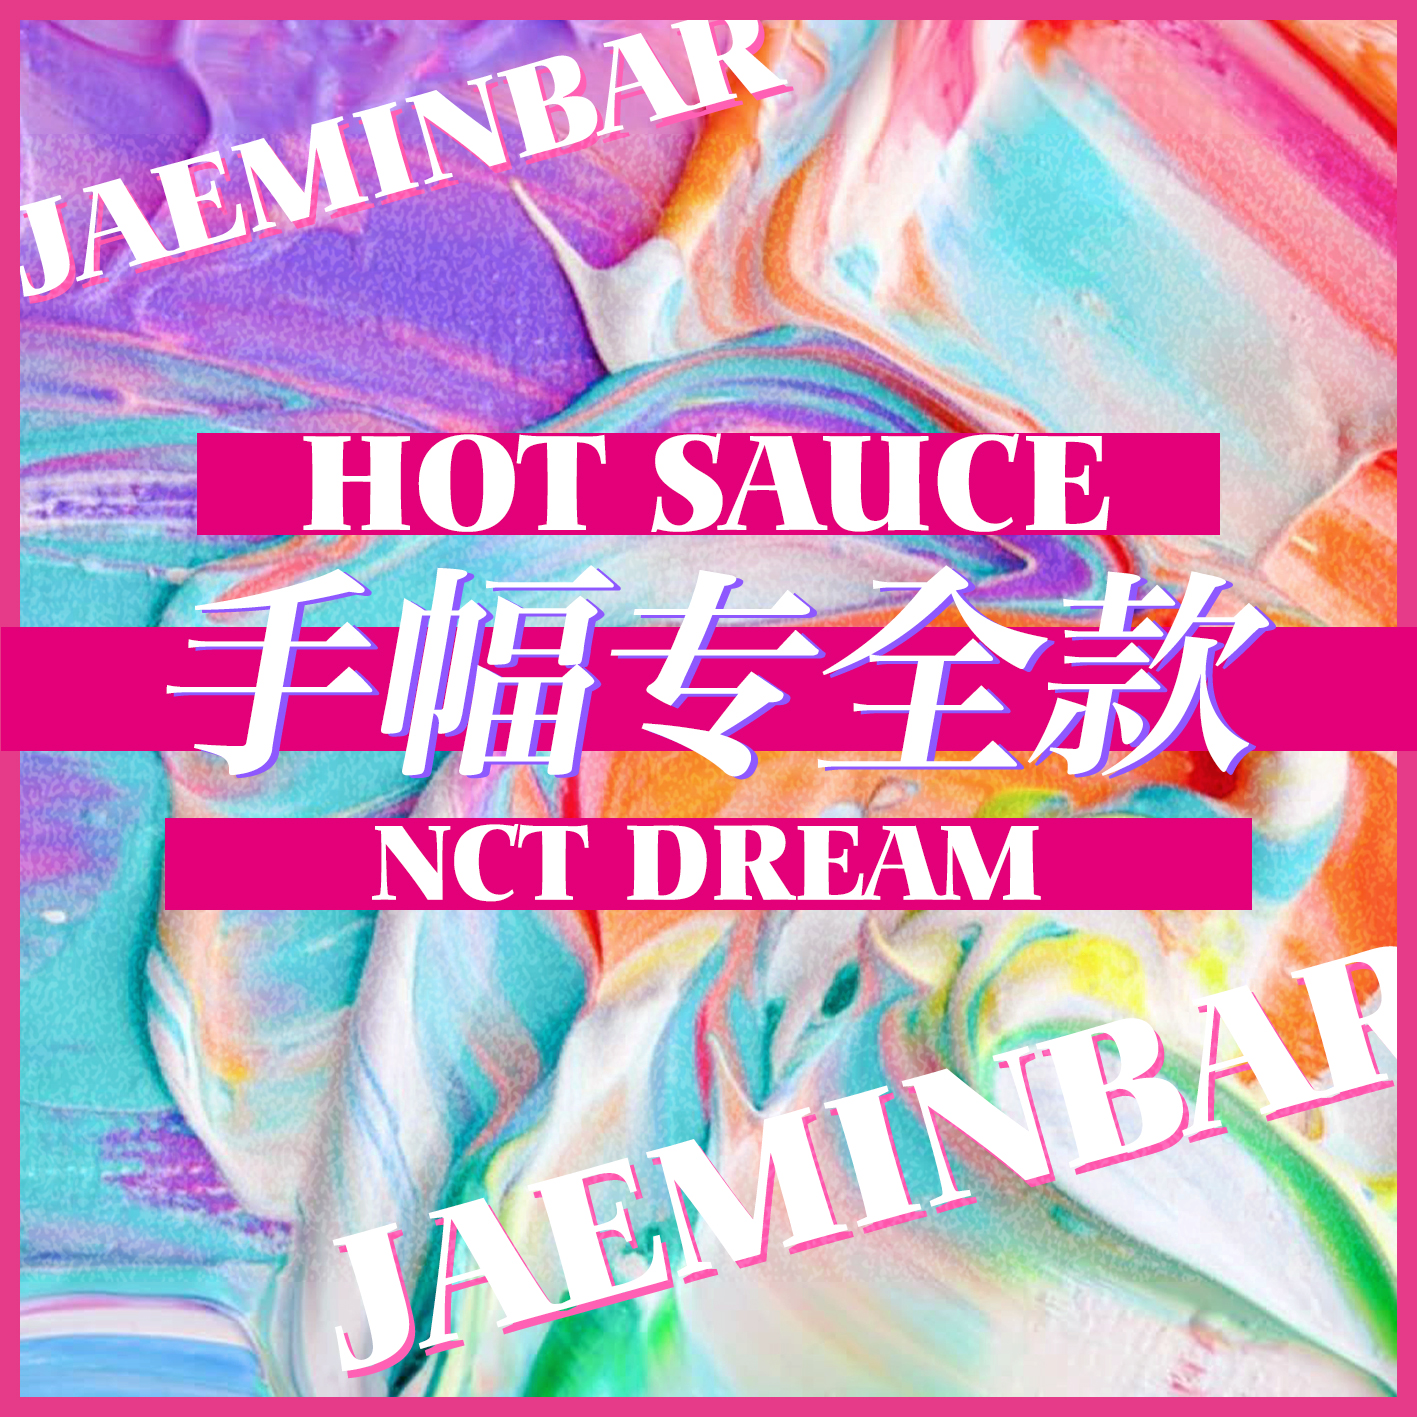 [全款 手幅专运回] NCT DREAM - Album Vol.1 [맛 (Hot Sauce)] (写真集版本) (随机版本) (*购买2张或以上是会提供不同版本) 罗渽民吧